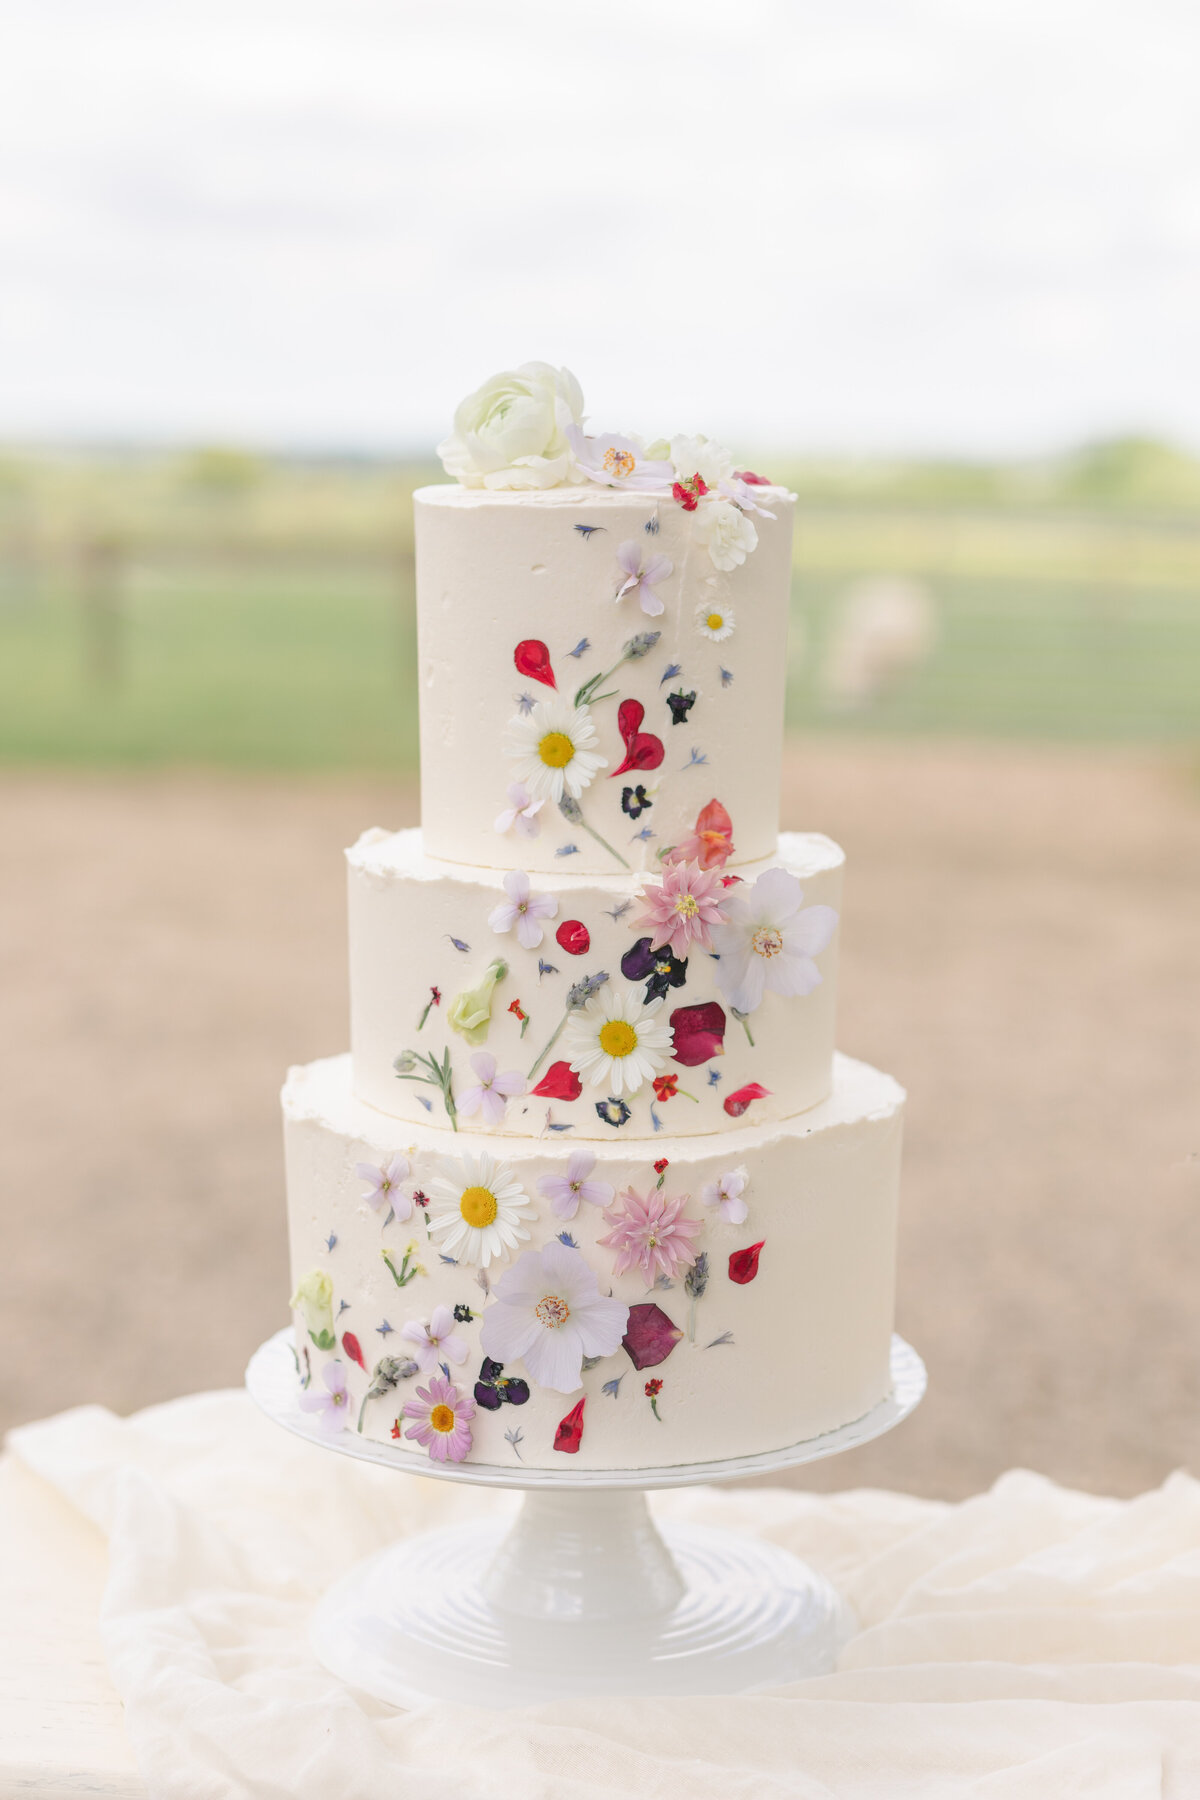 Edible flower cake for outdoor garden wedding